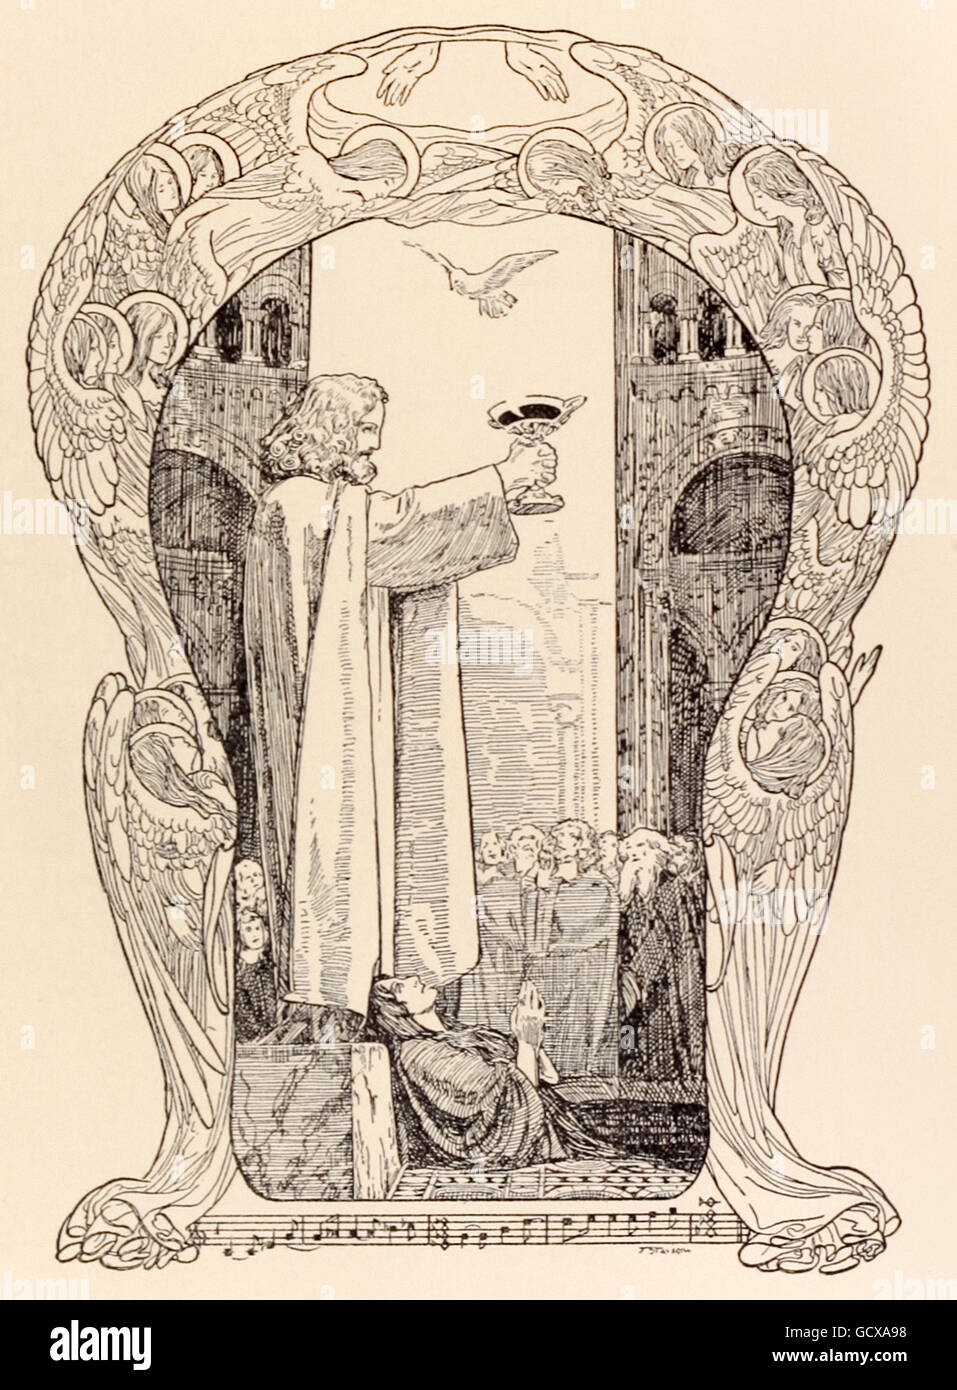 "Parsifal révélant le Saint Graal." Franz Stassen (1869-1949) illustration pour "Parsifal" de Richard Wagner (1813-1883). L'acte 3 - Commandes Parsifal le dévoilement du Graal que tous s'agenouiller, Kundry meurt comme une colombe blanche descend et passe au-dessus de Parsifal. Voir la description pour plus d'informations. Banque D'Images